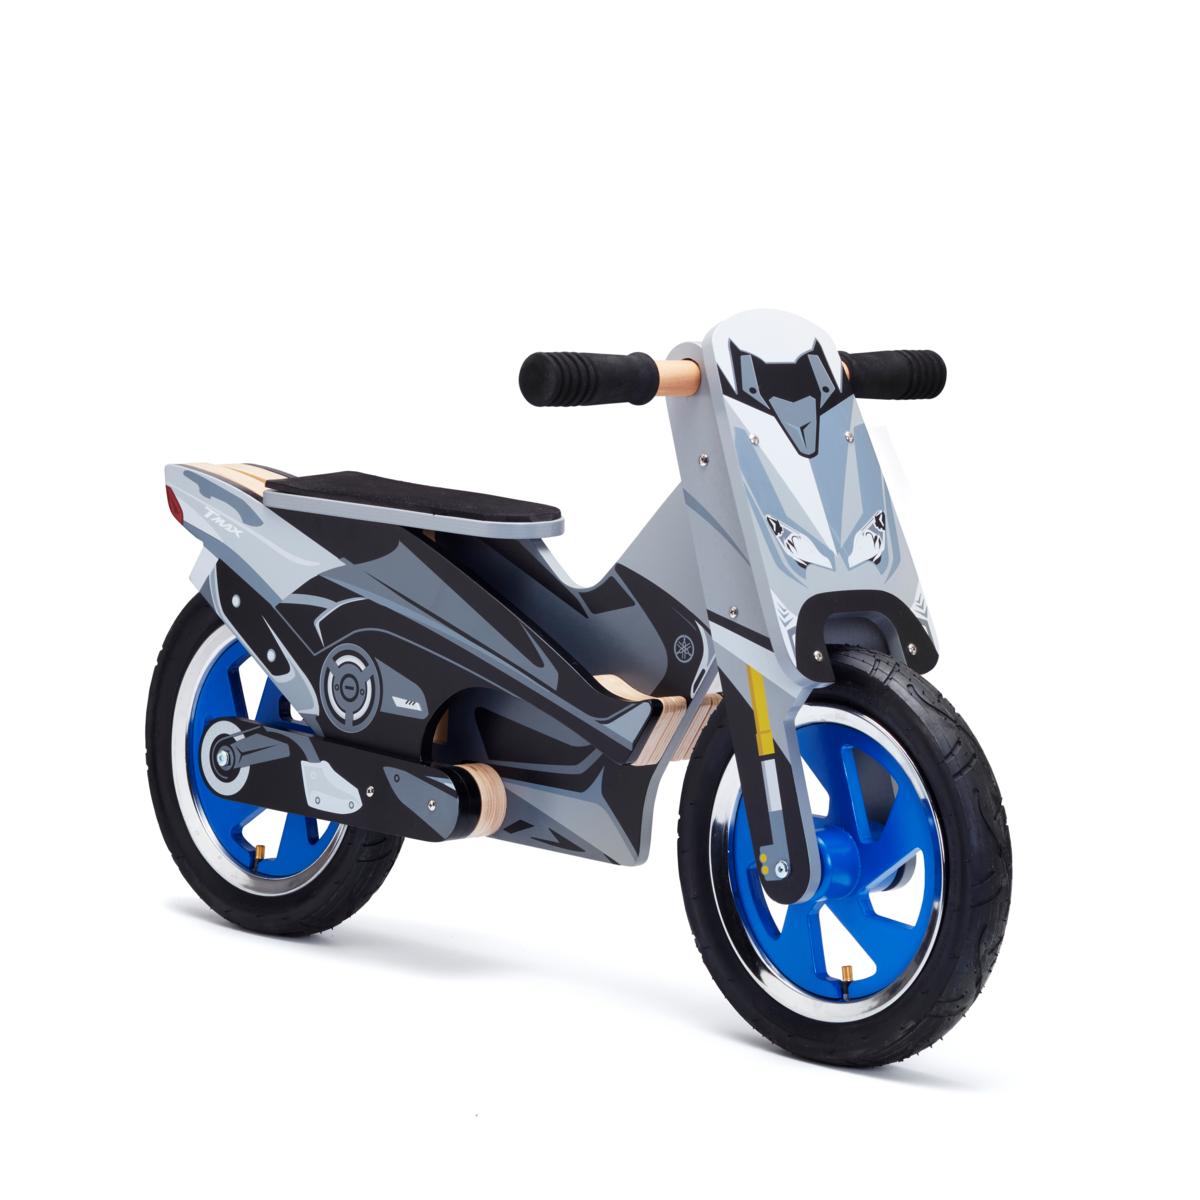 Scooter-Laufrad.
Inspiriert vom neuen Yamaha-TMAX! Unterstützen Sie Ihre Kinder dabei, wie sie ihr Gleichgewicht halten. 
